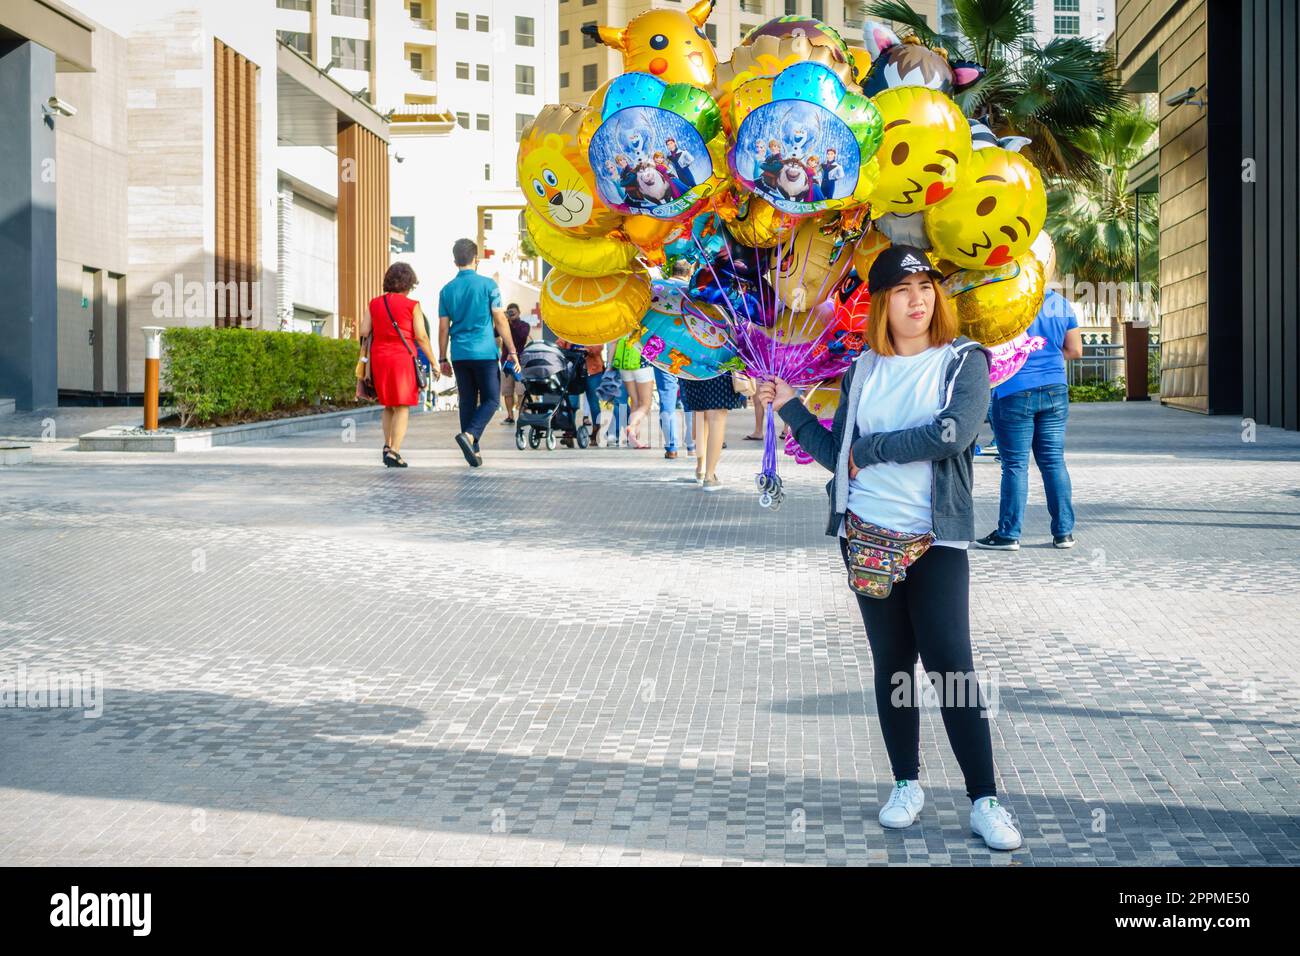 A party balloon vendor on JBR Walk Stock Photo